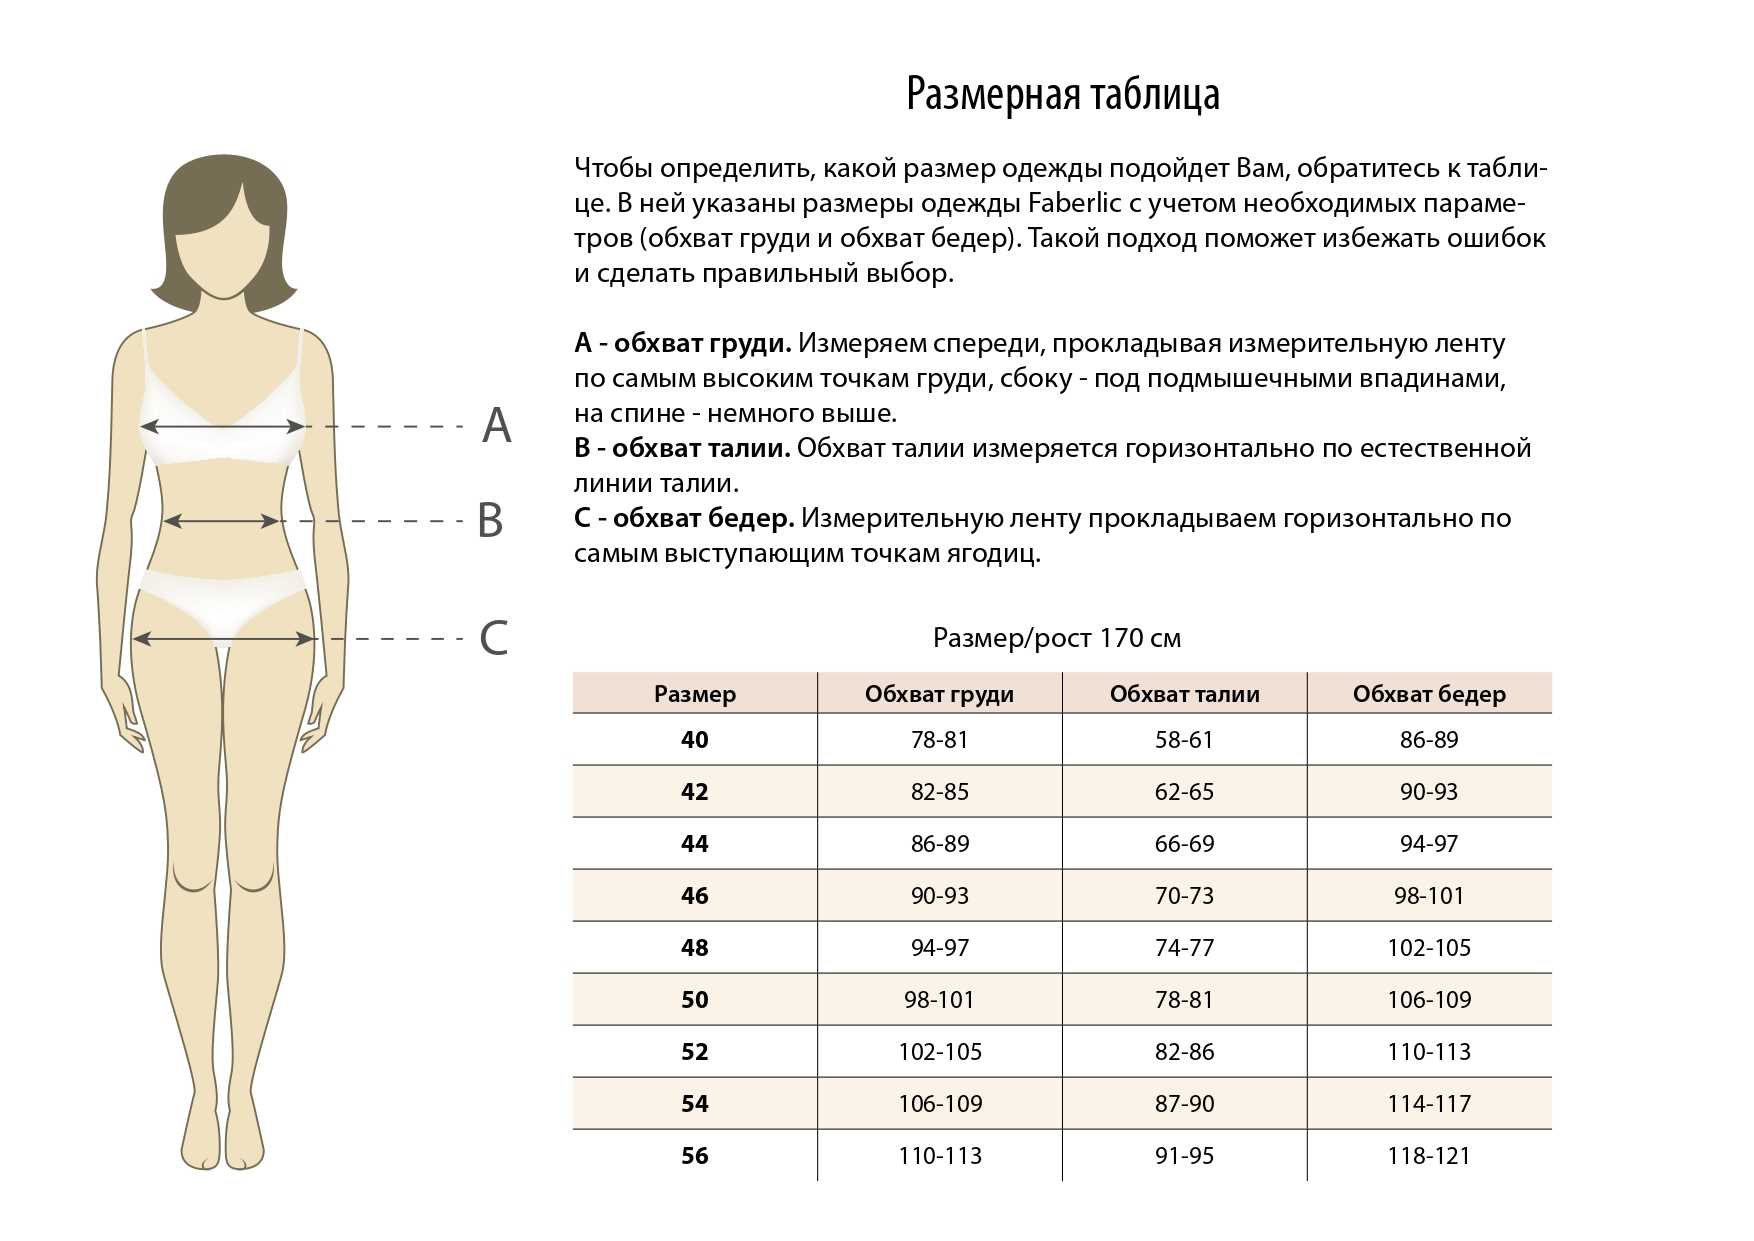 Размеры одежды — таблицы соответствия размеров вида s, m, l, xl, xxl и xxxl, принятым у нас